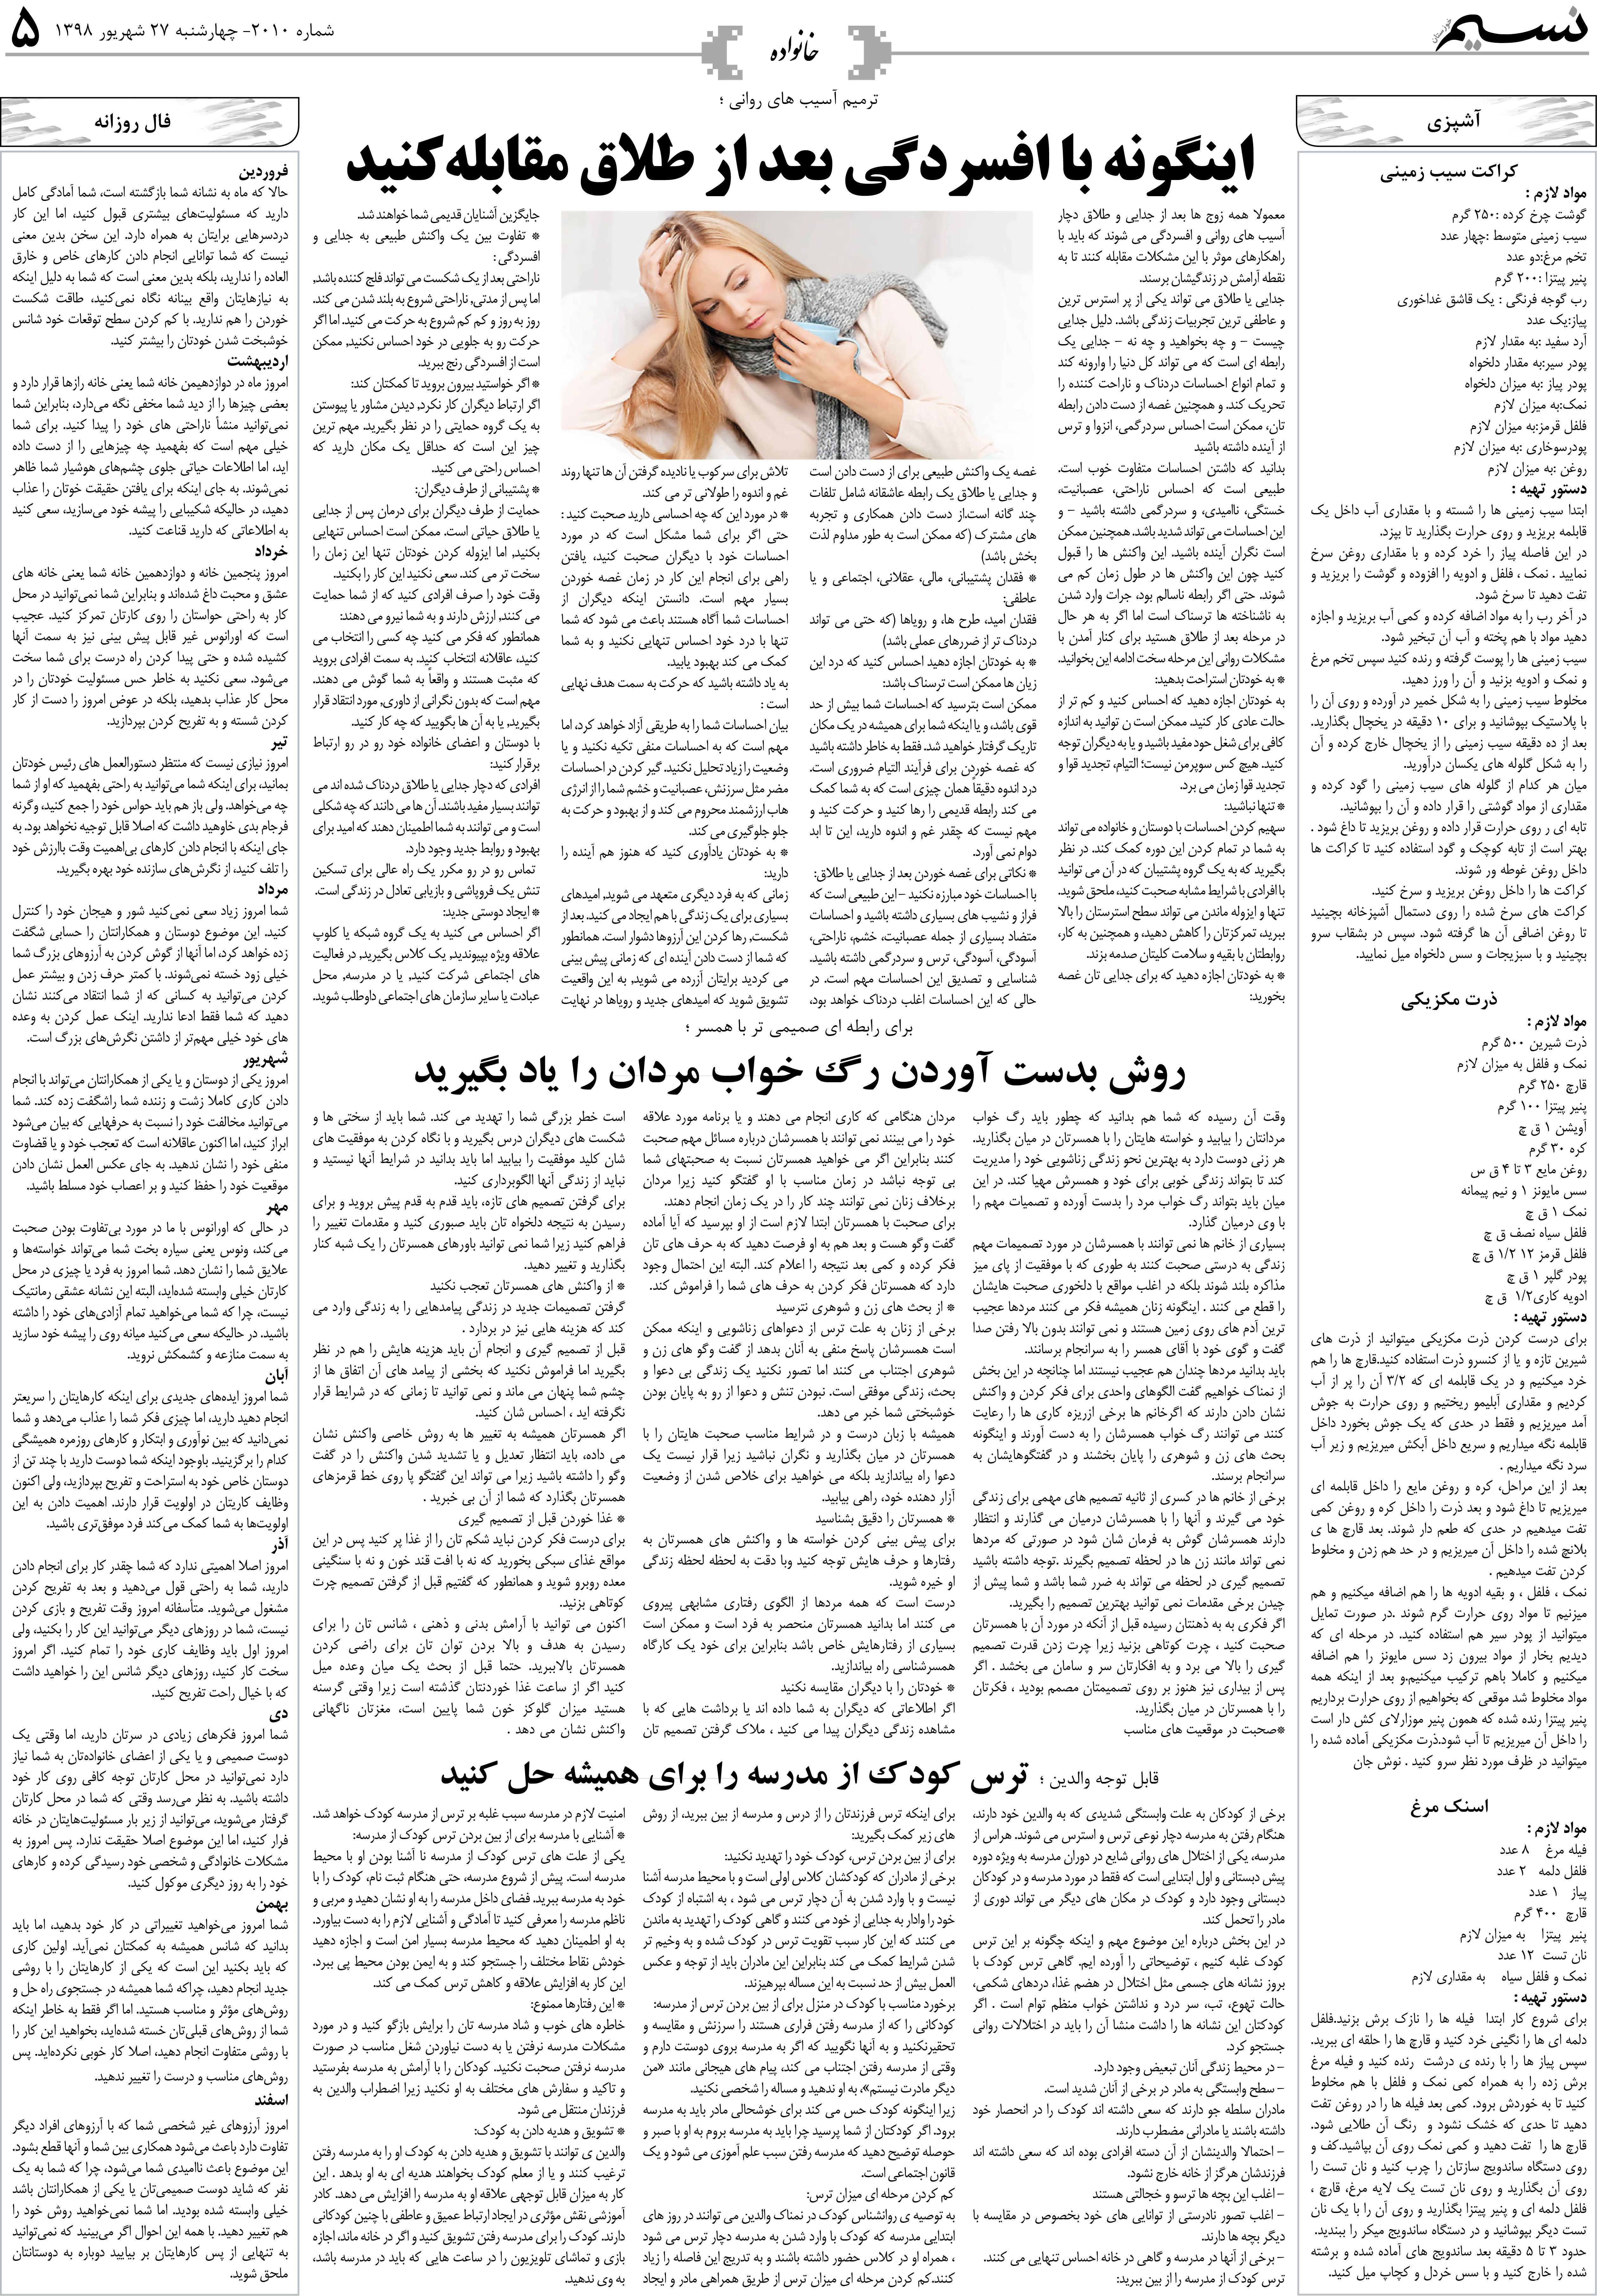 صفحه خانواده روزنامه نسیم شماره 2010